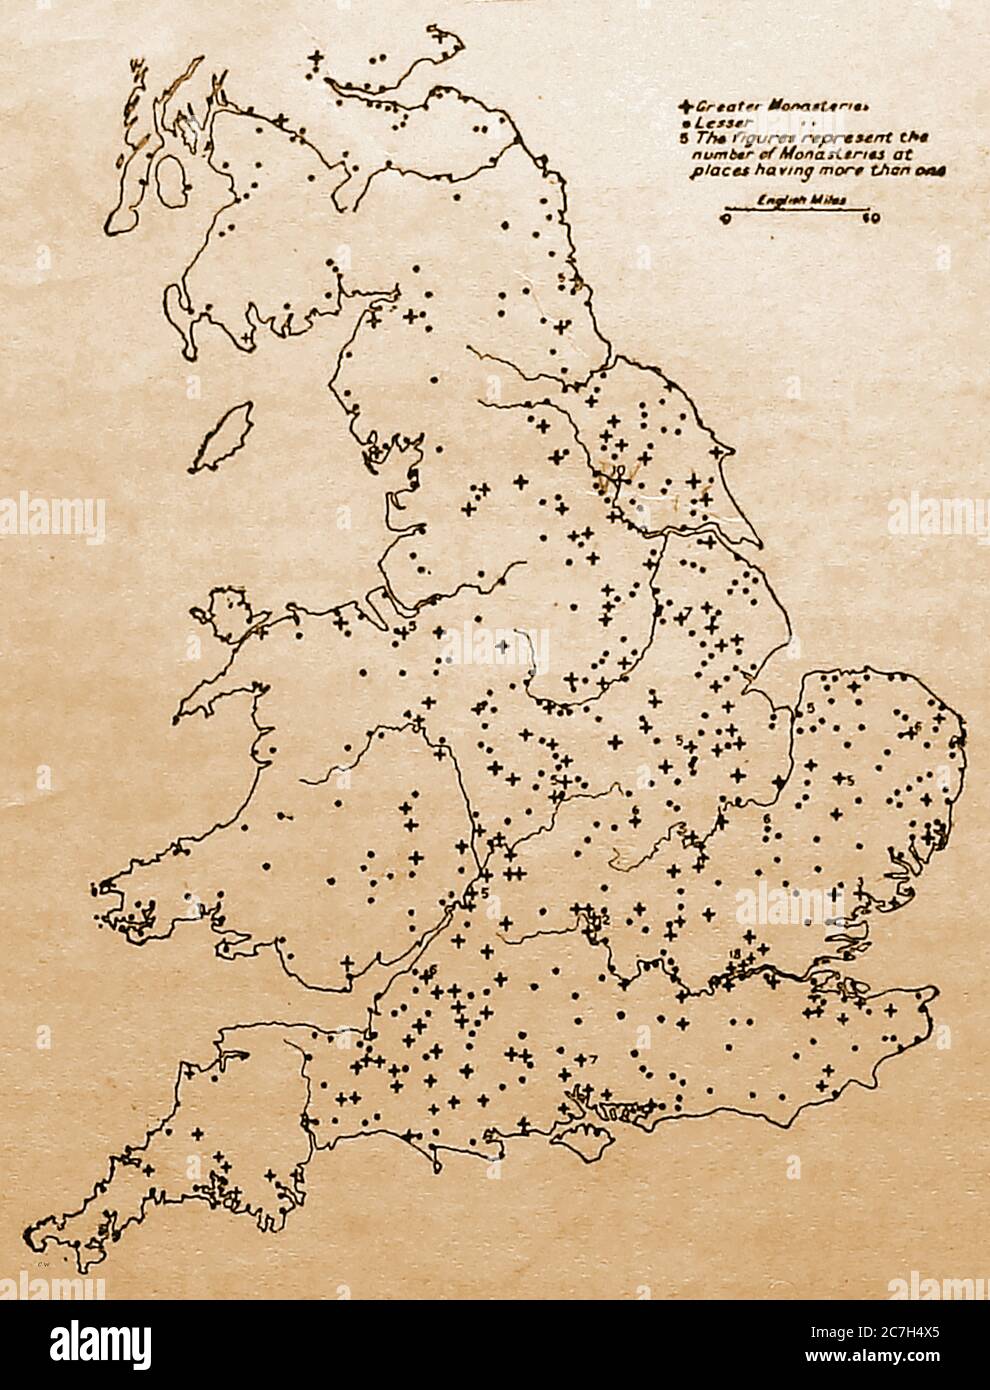 Una mappa del 1921 delle case religiose in Gran Bretagna al momento dello scioglimento, tra cui monasteri minori (1535) e monasteri maggiori (1539) che sopprimevano, monache, frati, conventi, prioni e abbazie confiscarono la loro ricchezza. Foto Stock